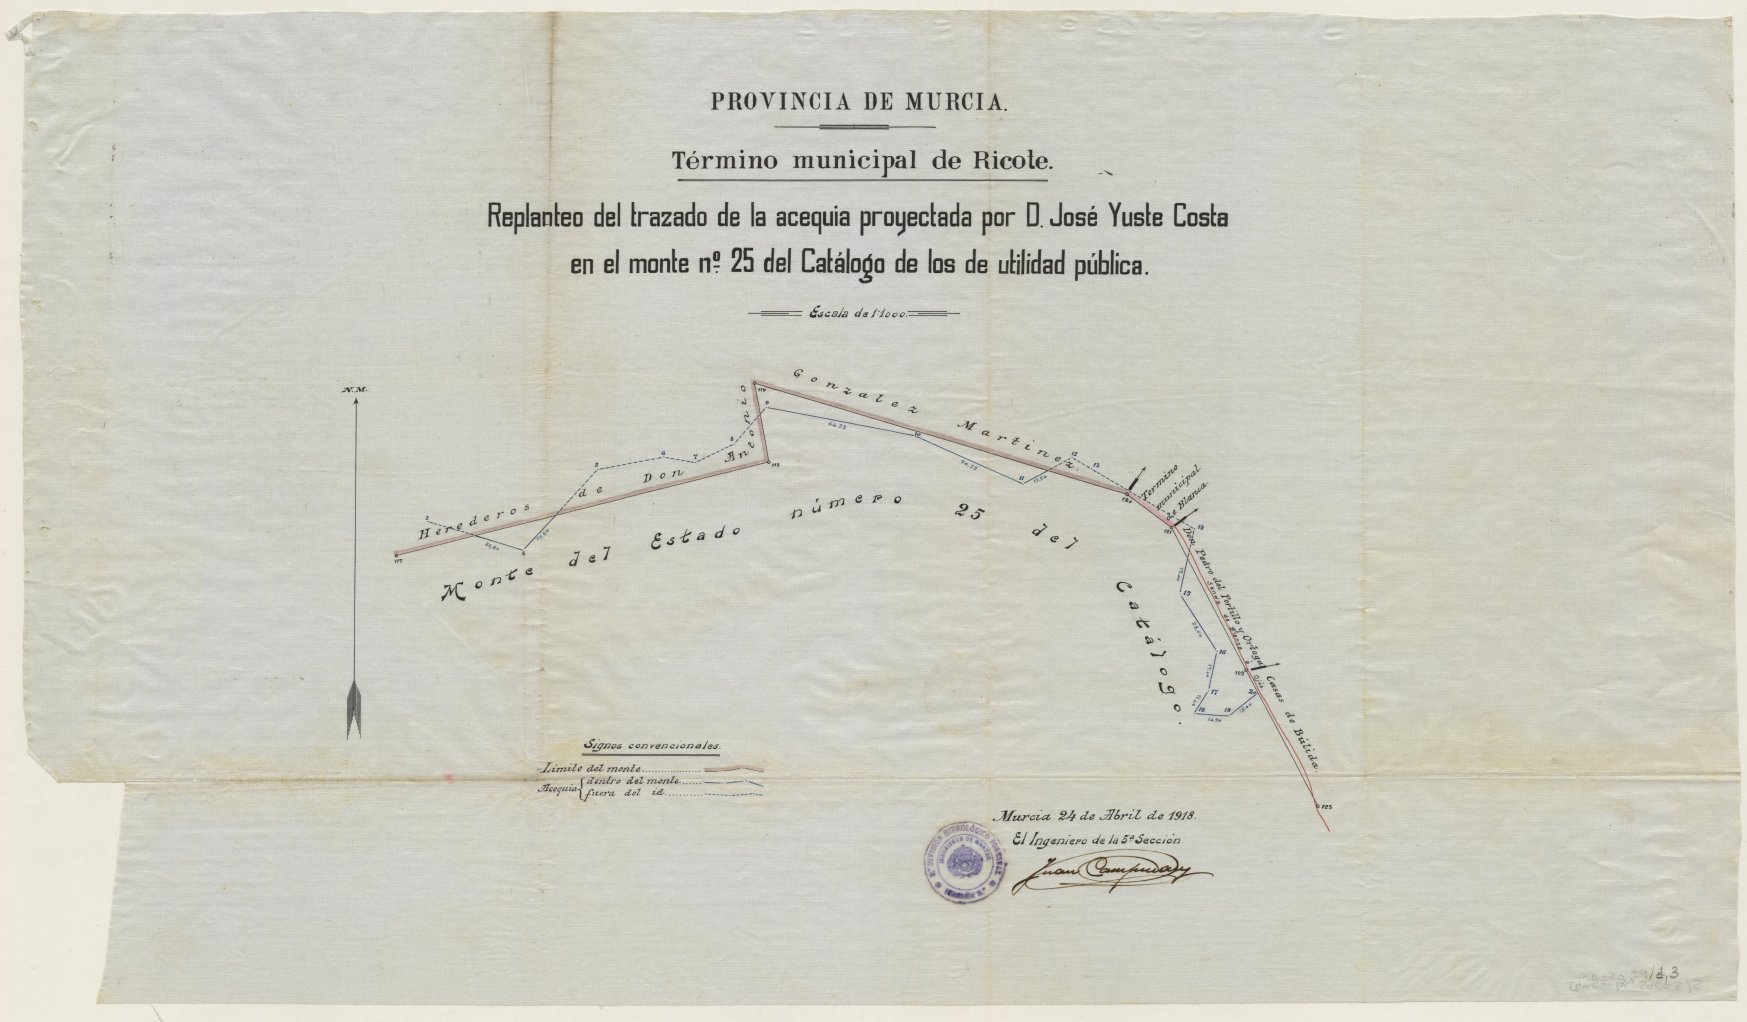 Plano del replanteo de la acequia proyectada por don José Yuste Costa en el monte nº 25 del Catálogo de los de utilidad pública. Término municipal de Ricote.